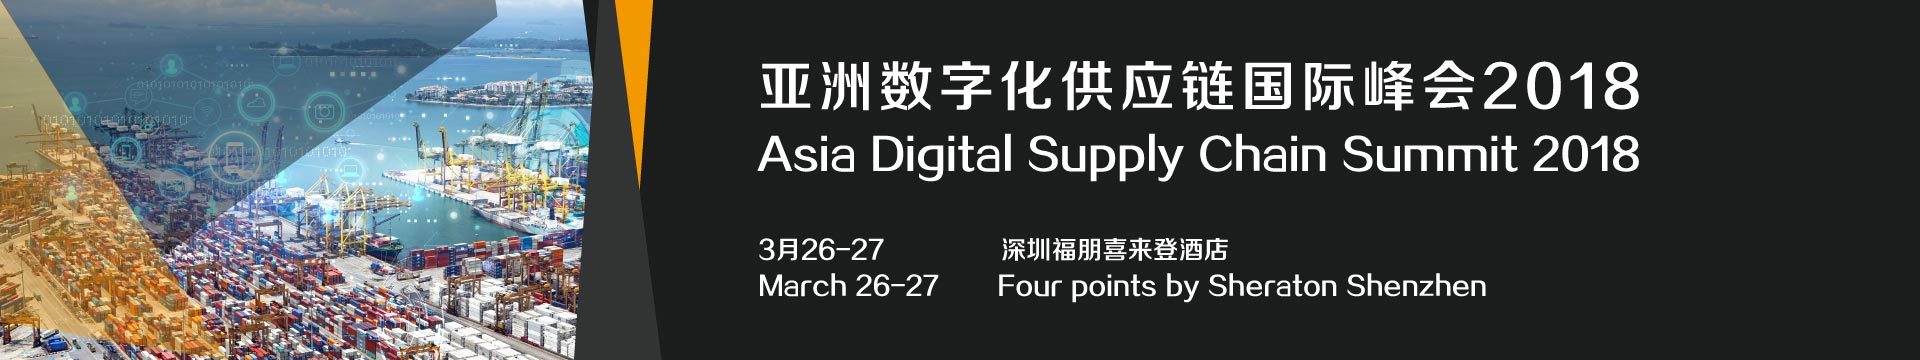 亚洲数字化供应链国际峰会2018